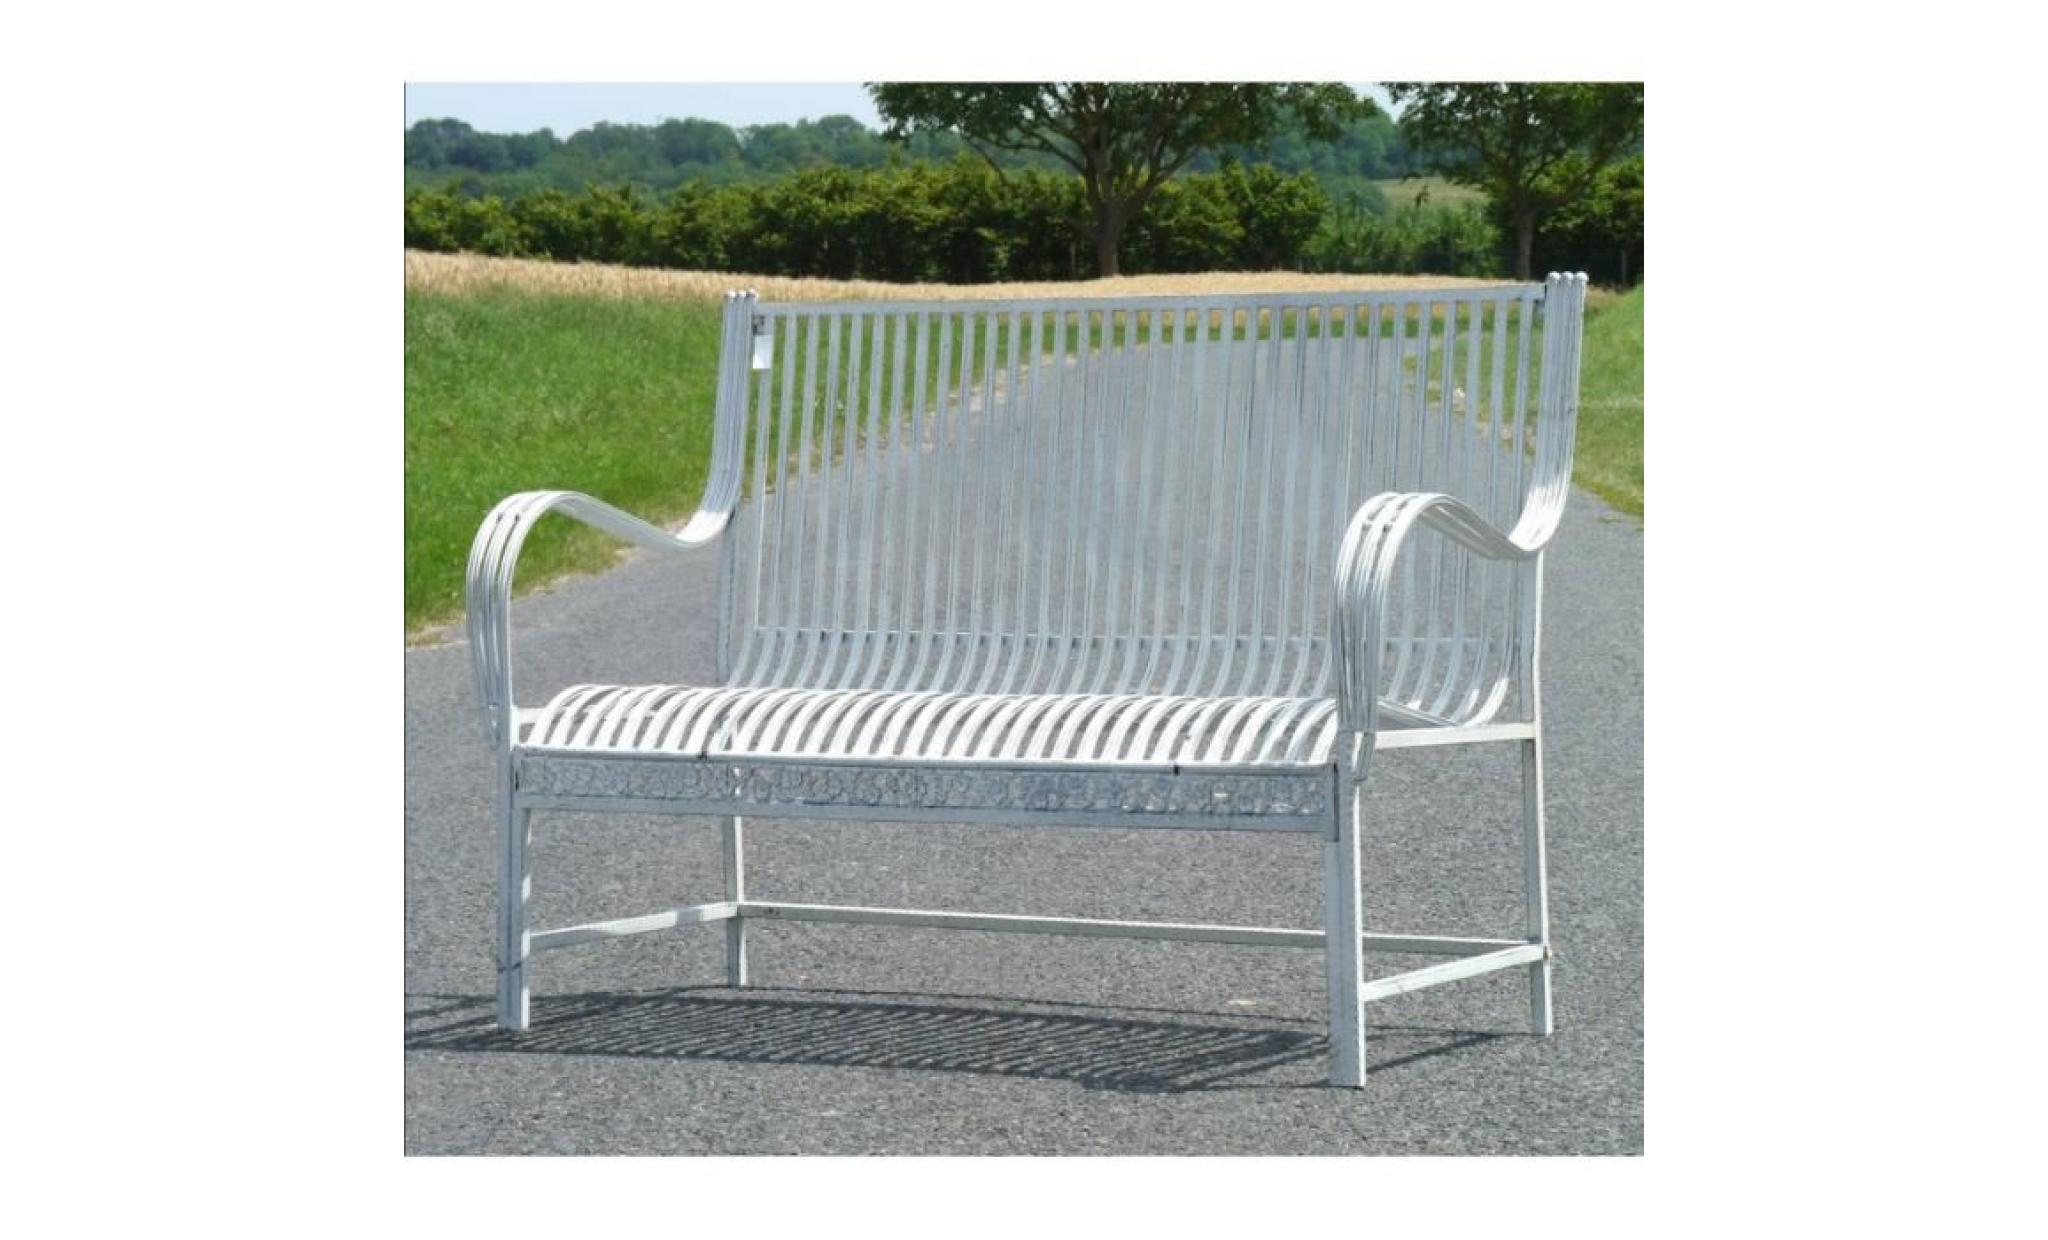 grand banc banquette assise de jardin fauteuil en fer et fonte blanc 75x98x137cm pas cher